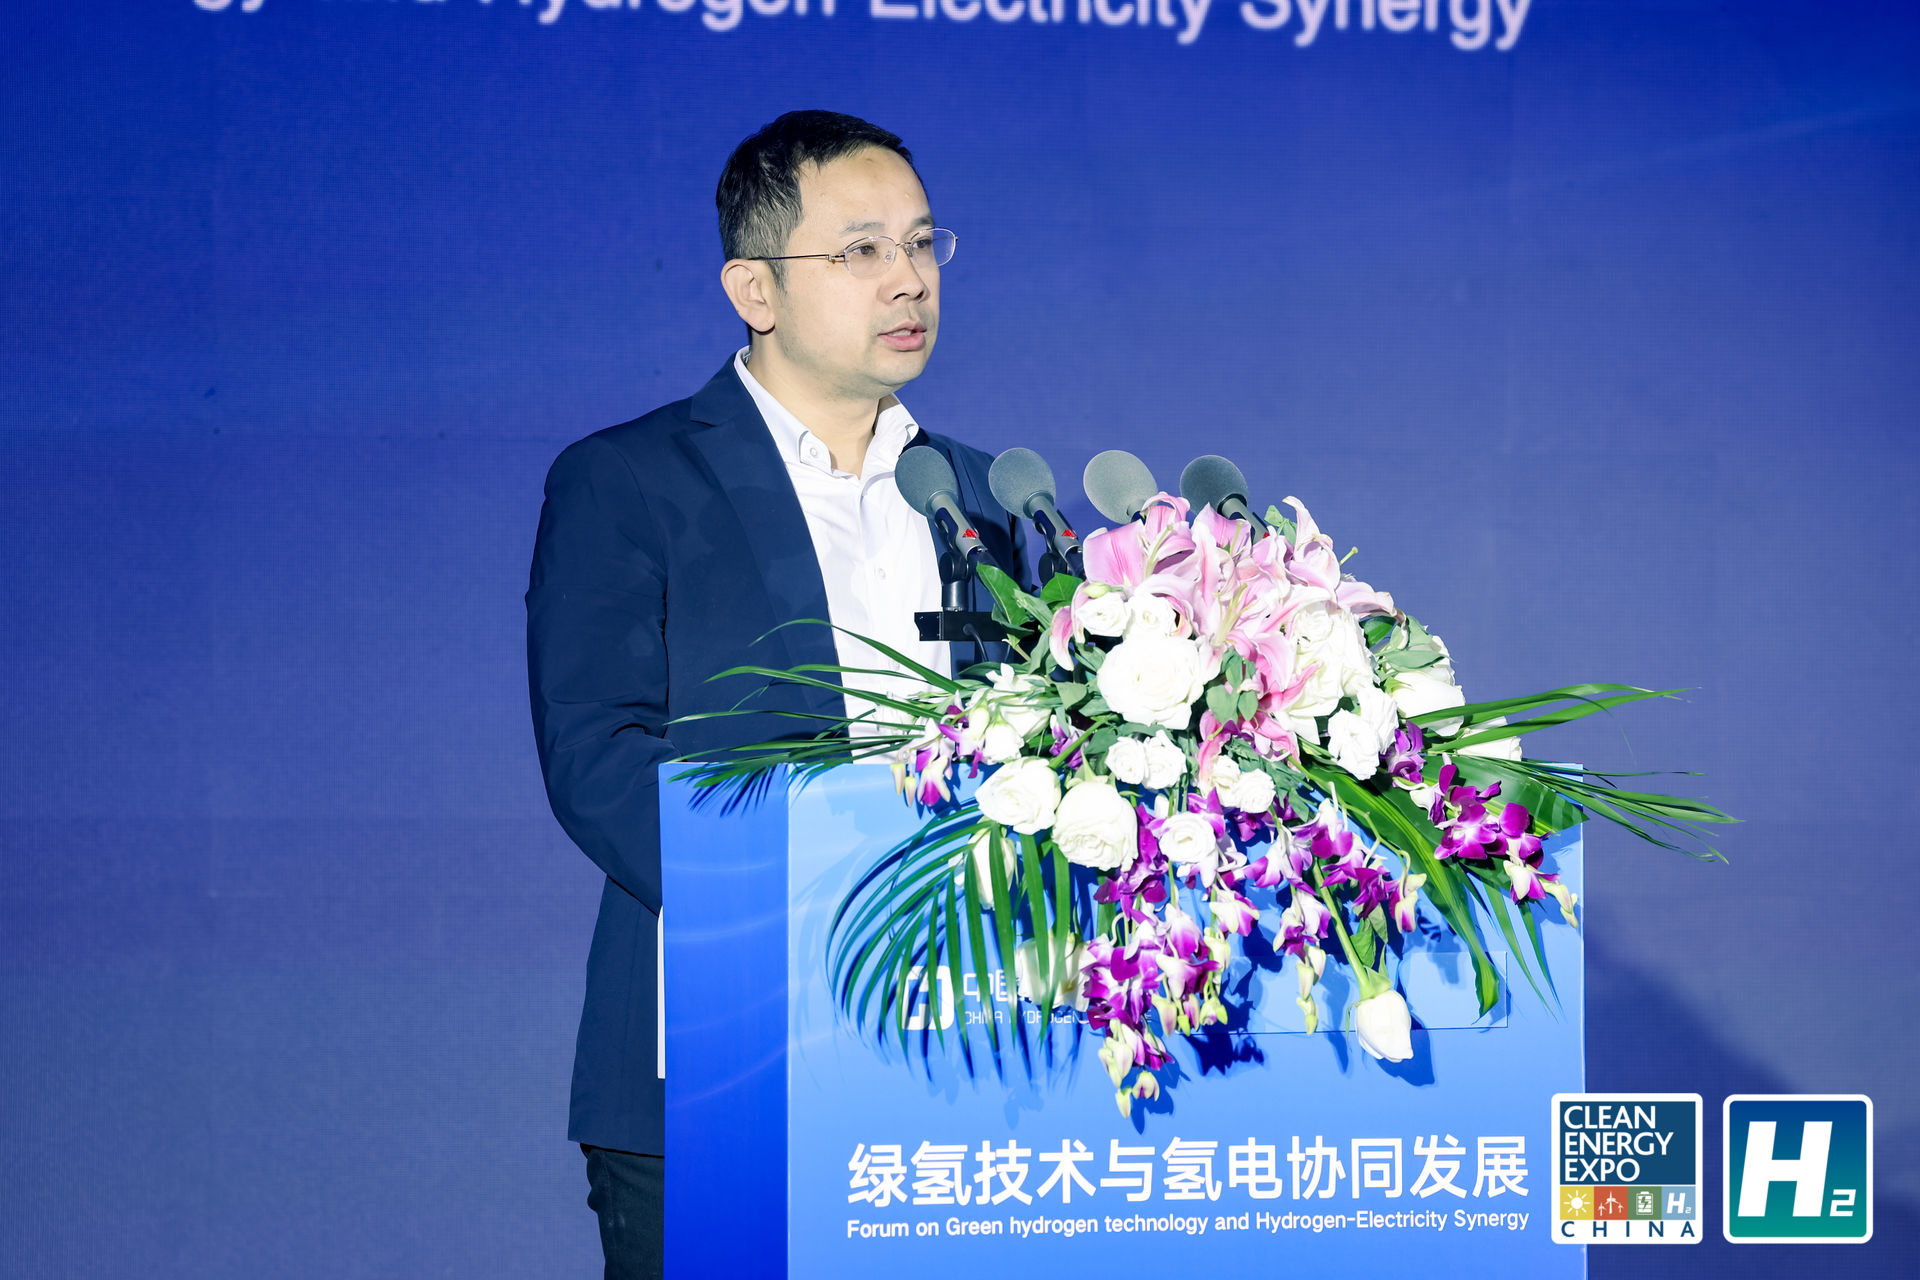 康建东  中国电力科学研究院有限公司技术战略研究中心室主任